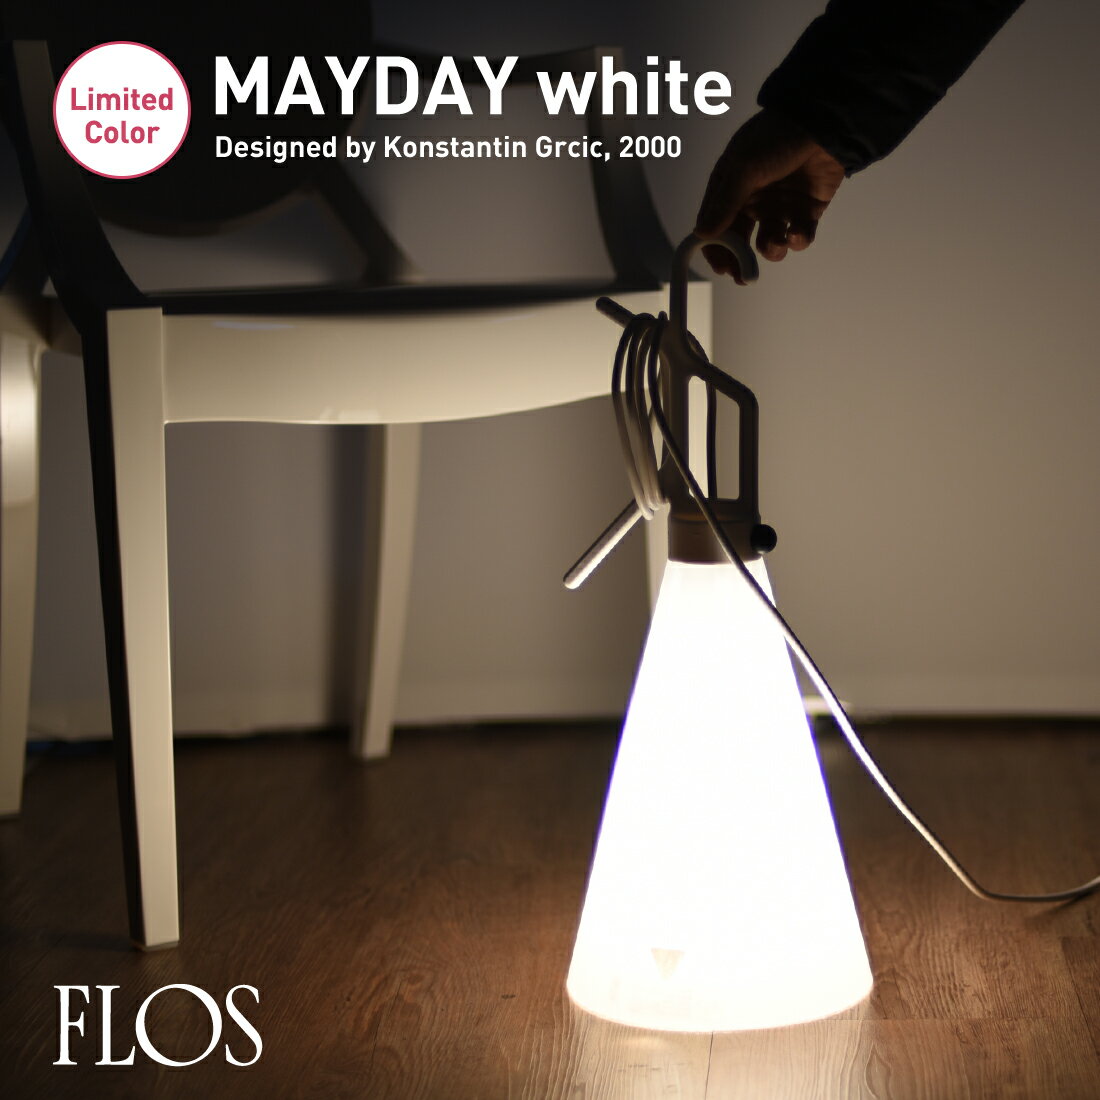 FLOS フロス May day　メイデイ ランプ　ホワイト Konstantin Grcic コンスタンティン・グルチッチ ライト 照明 デザイナーズ スタンド ペンダント テーブル メーデー